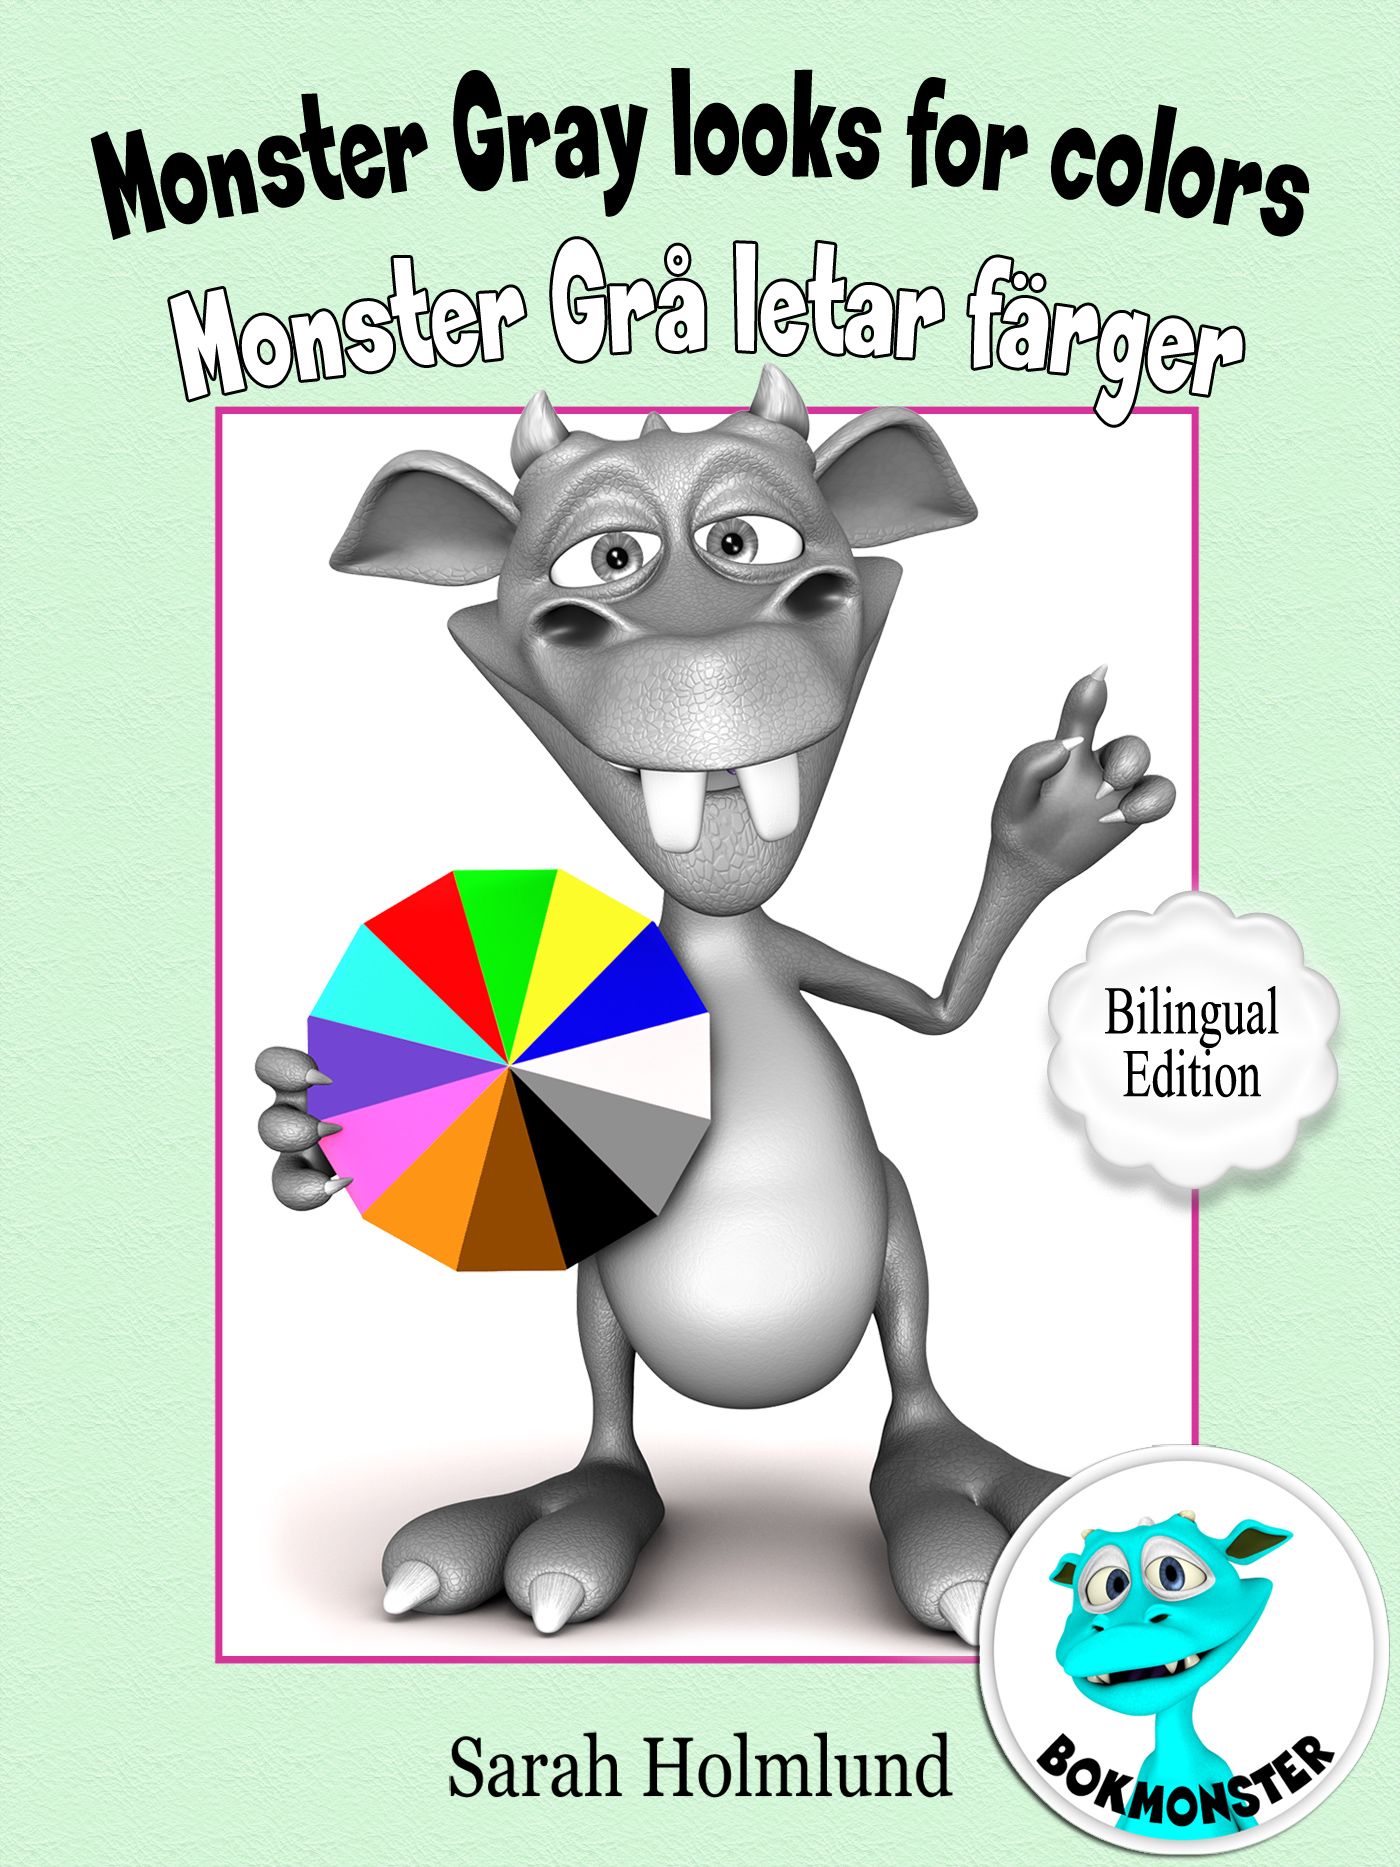 Monster Gray looks for colors - Monster Grå letar färger - Bilingual Edition, e-bog af Sarah Holmlund